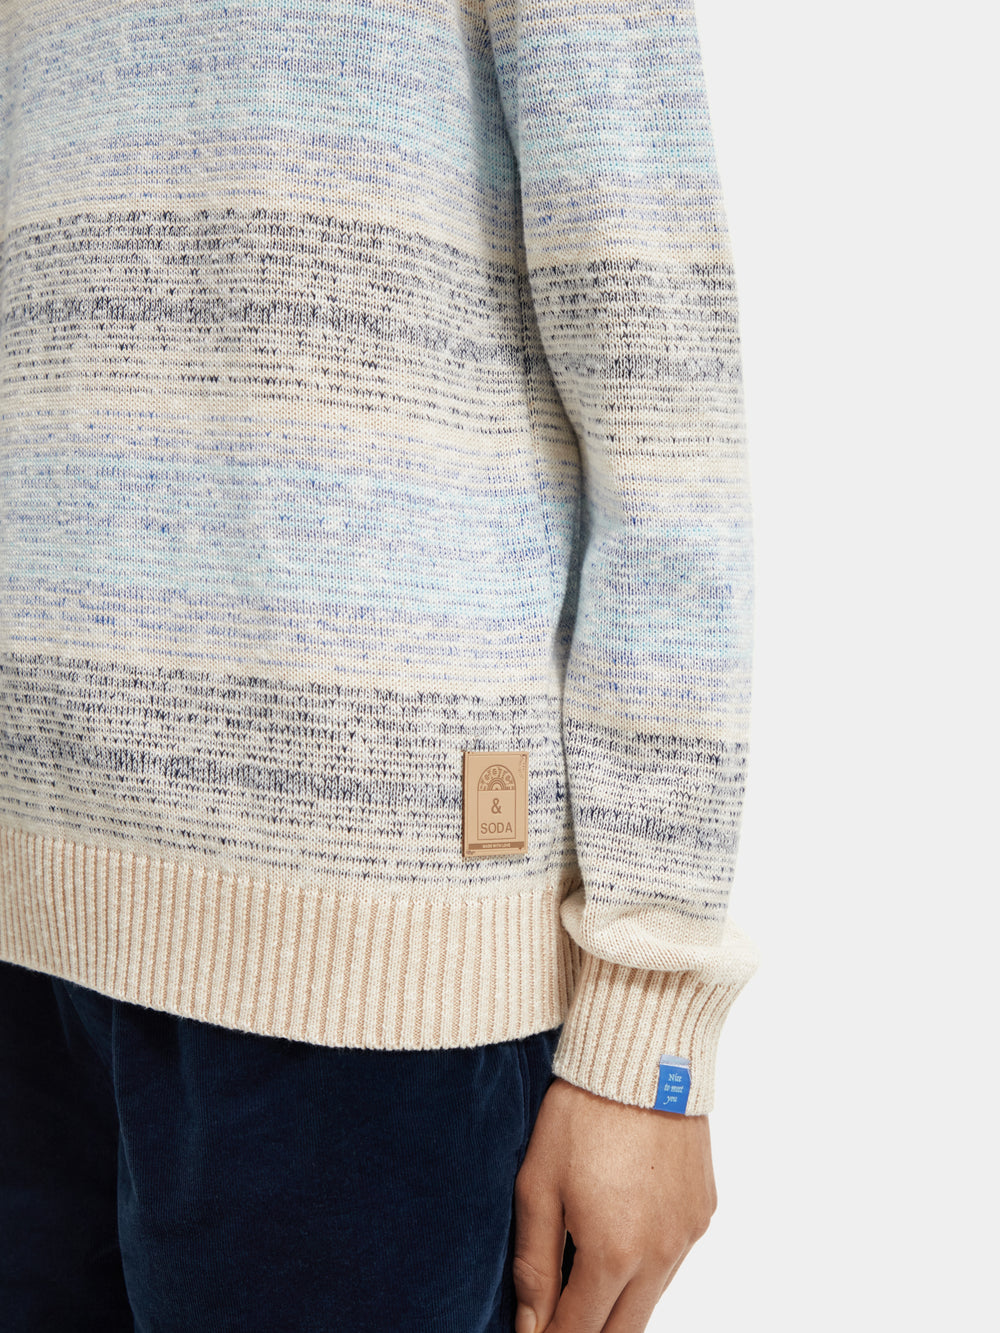 Gradient stripe crewneck sweater - Scotch & Soda NZ